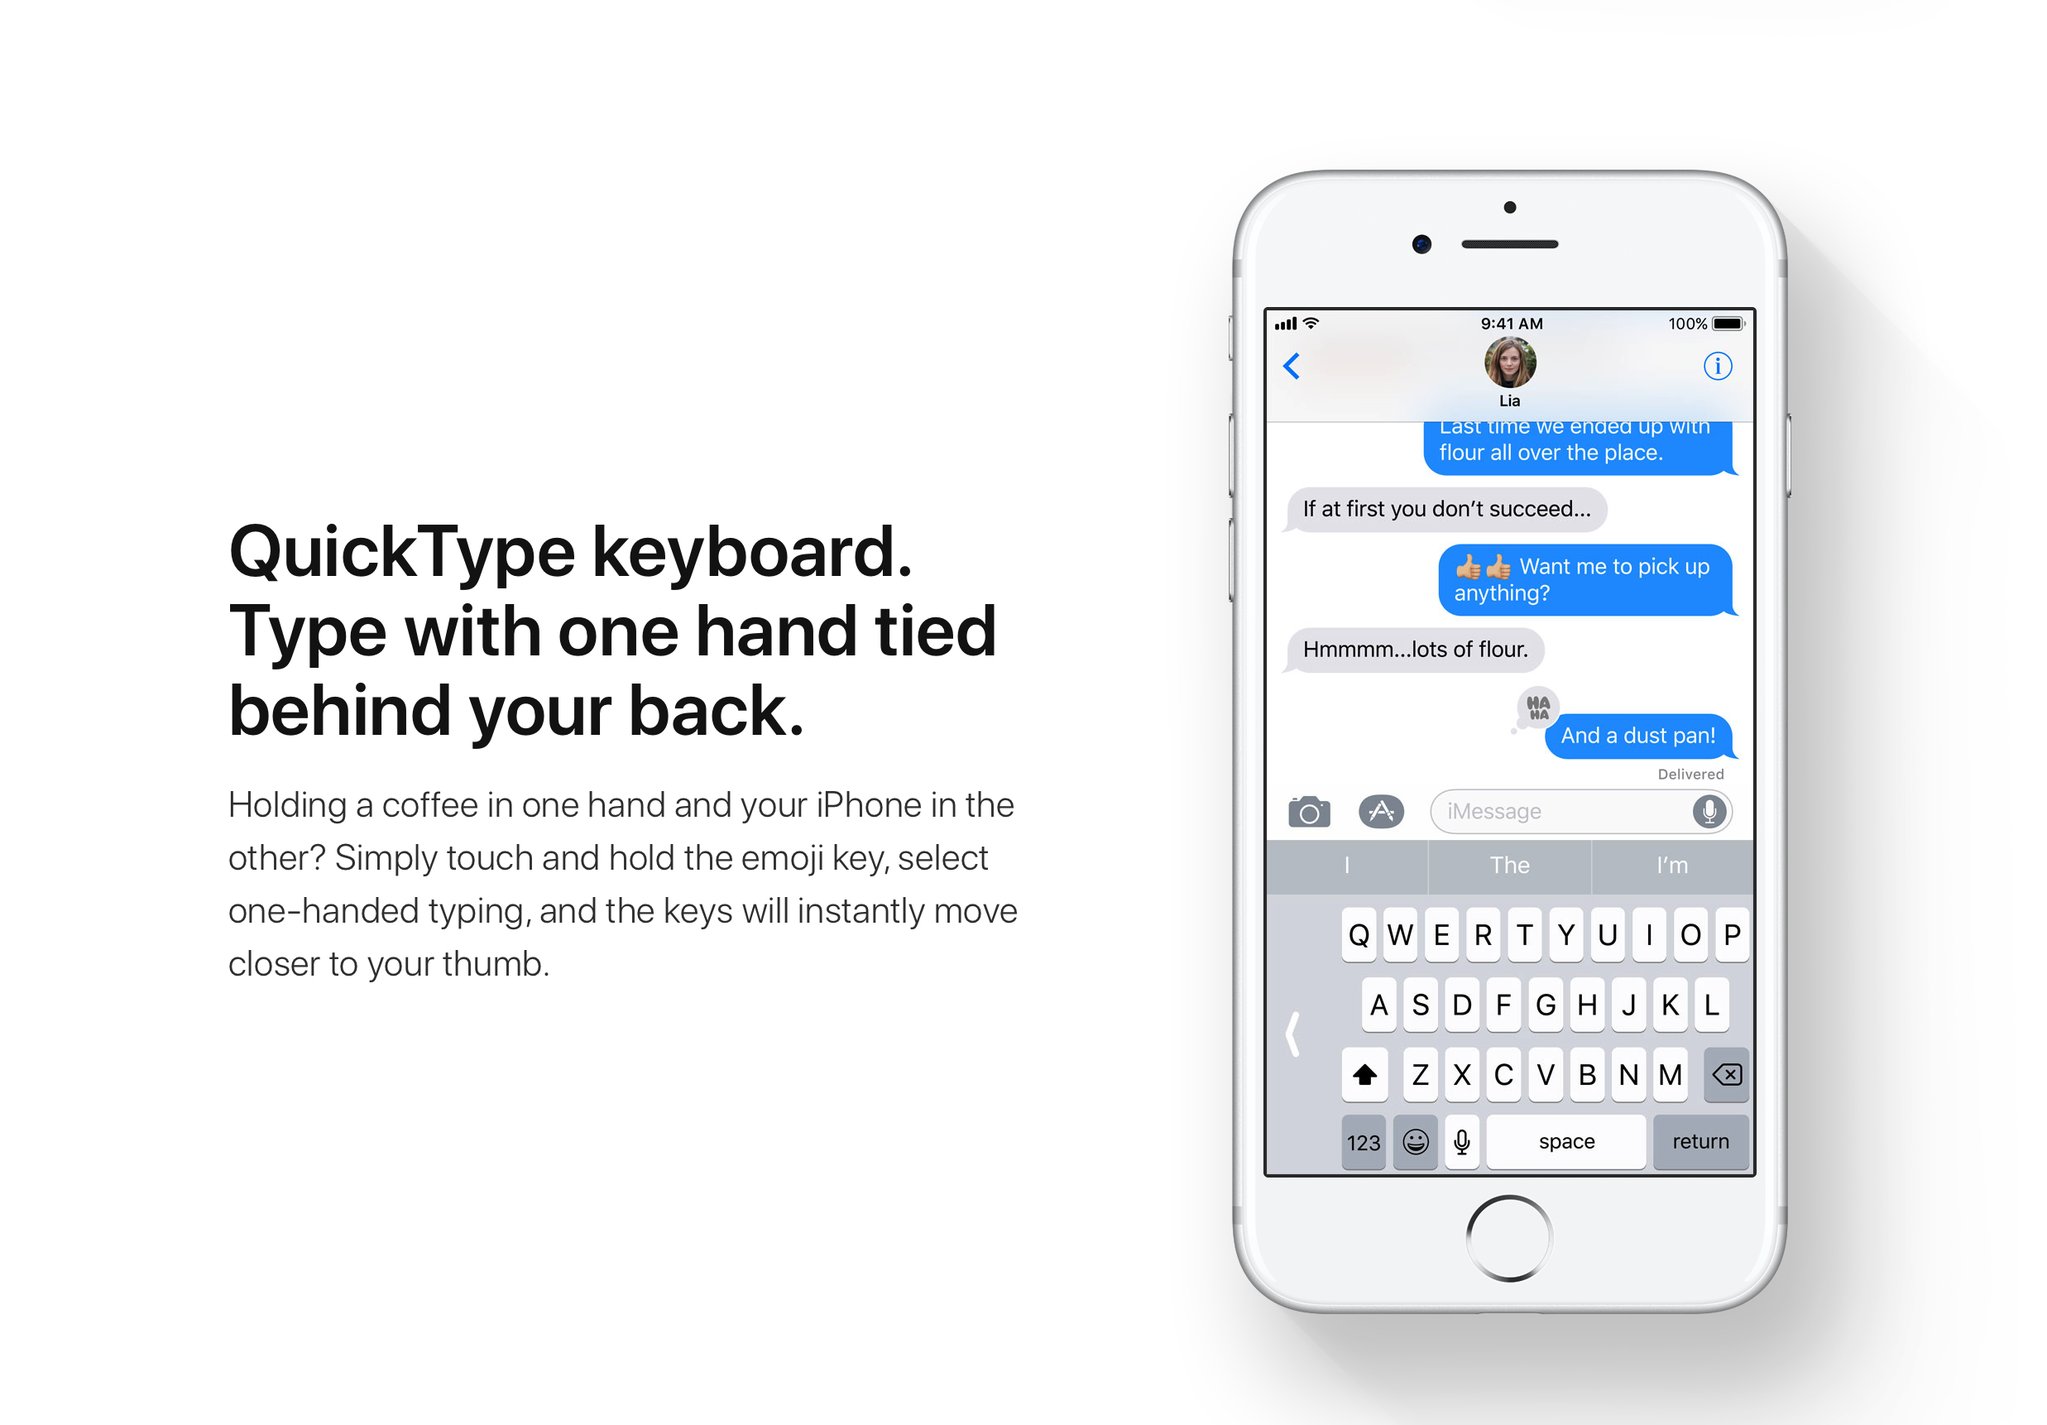 iOS 11 tangentbord för enhandsskrivning